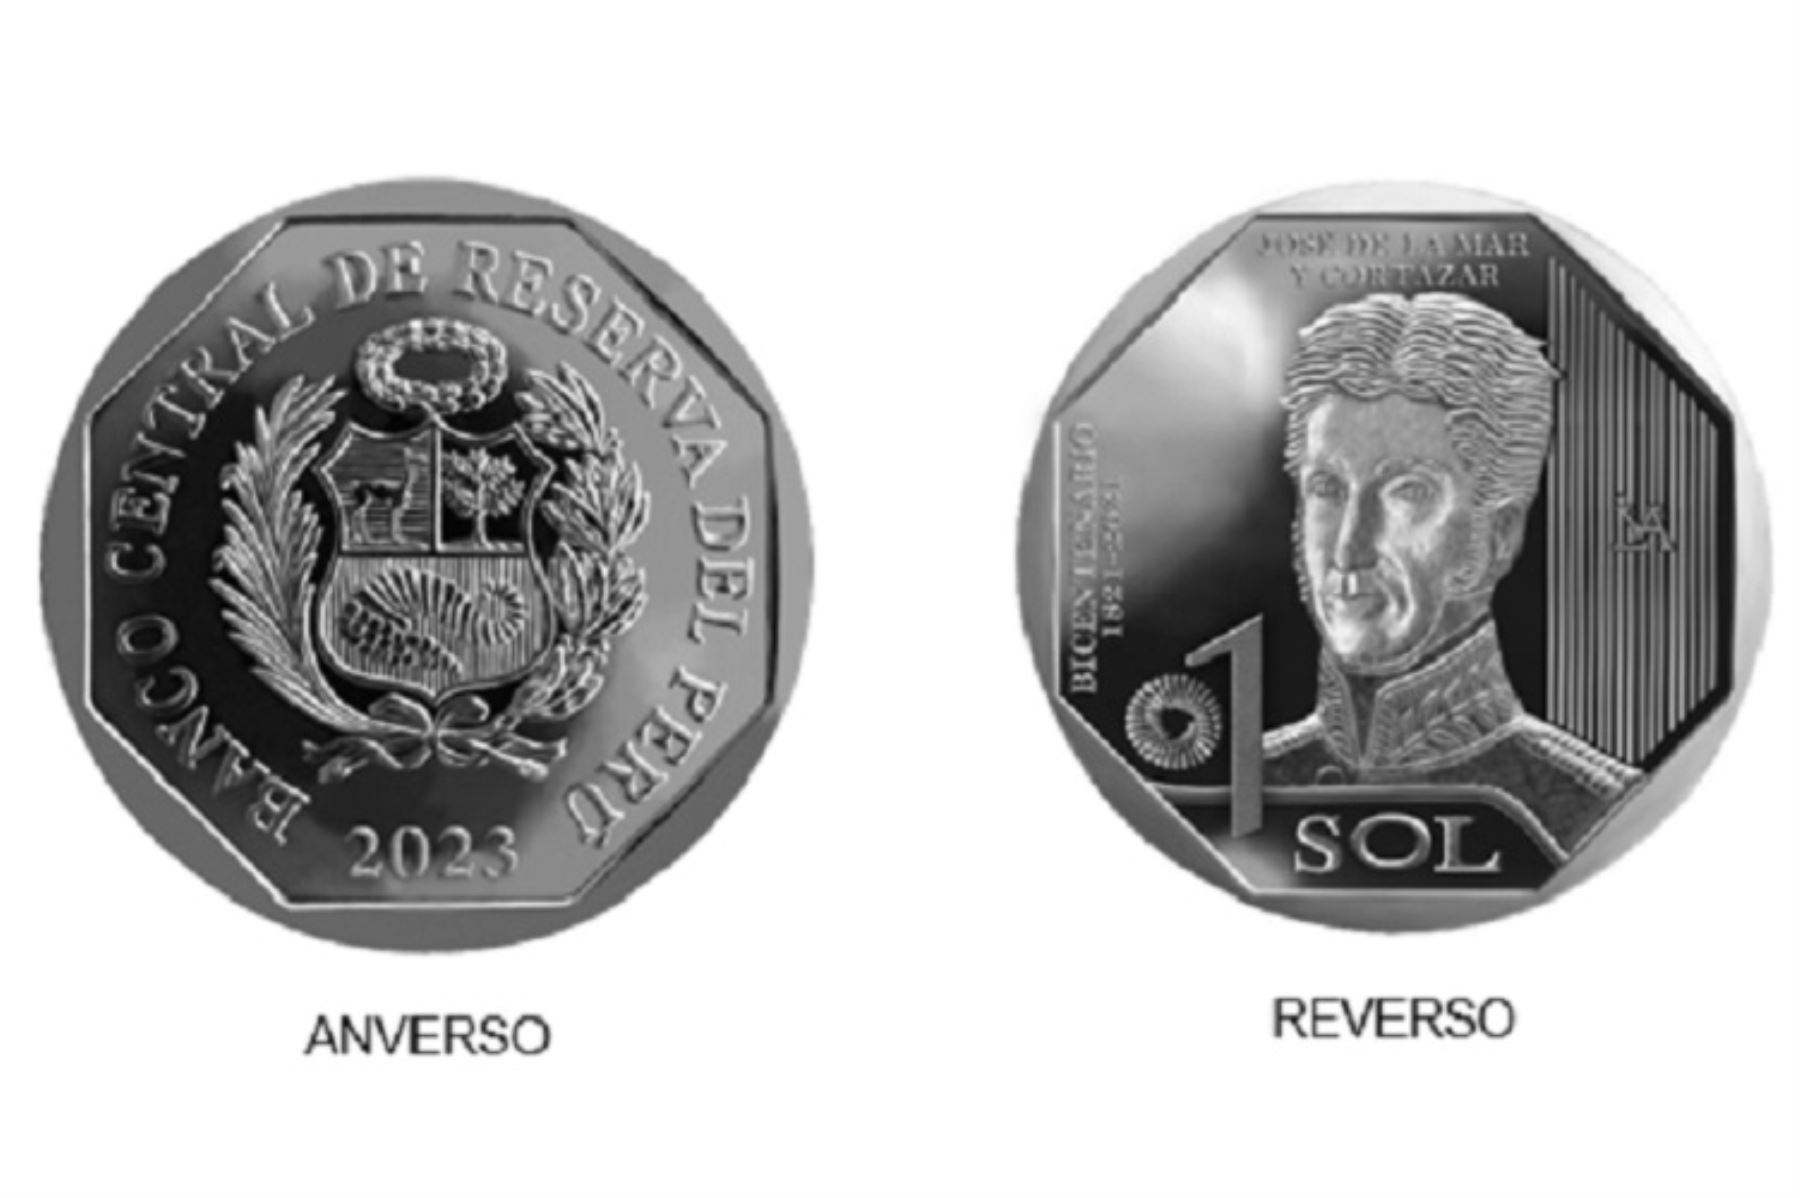 El Banco Central de Reserva del Perú emitió la octava moneda de la serie numismática Constructores de la República Bicentenario 1821-2021, alusiva a José de la Mar y Cortázar, en el marco de la conmemoración del Bicentenario de la Independencia del Perú. Foto: Cortesía.